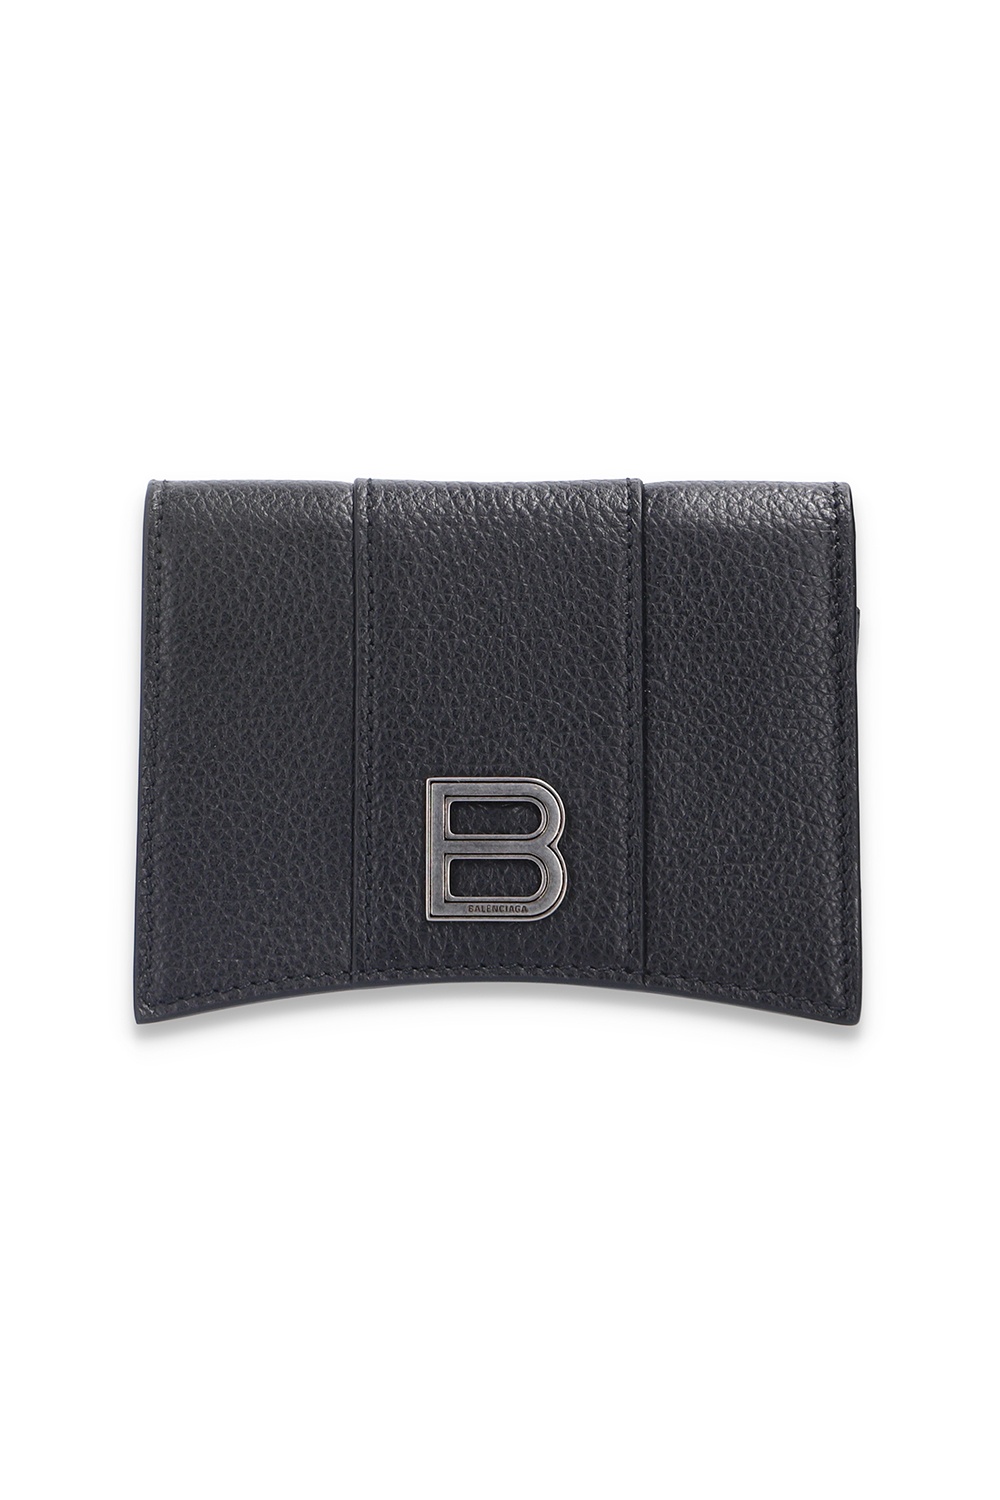 Balenciaga Folding card case